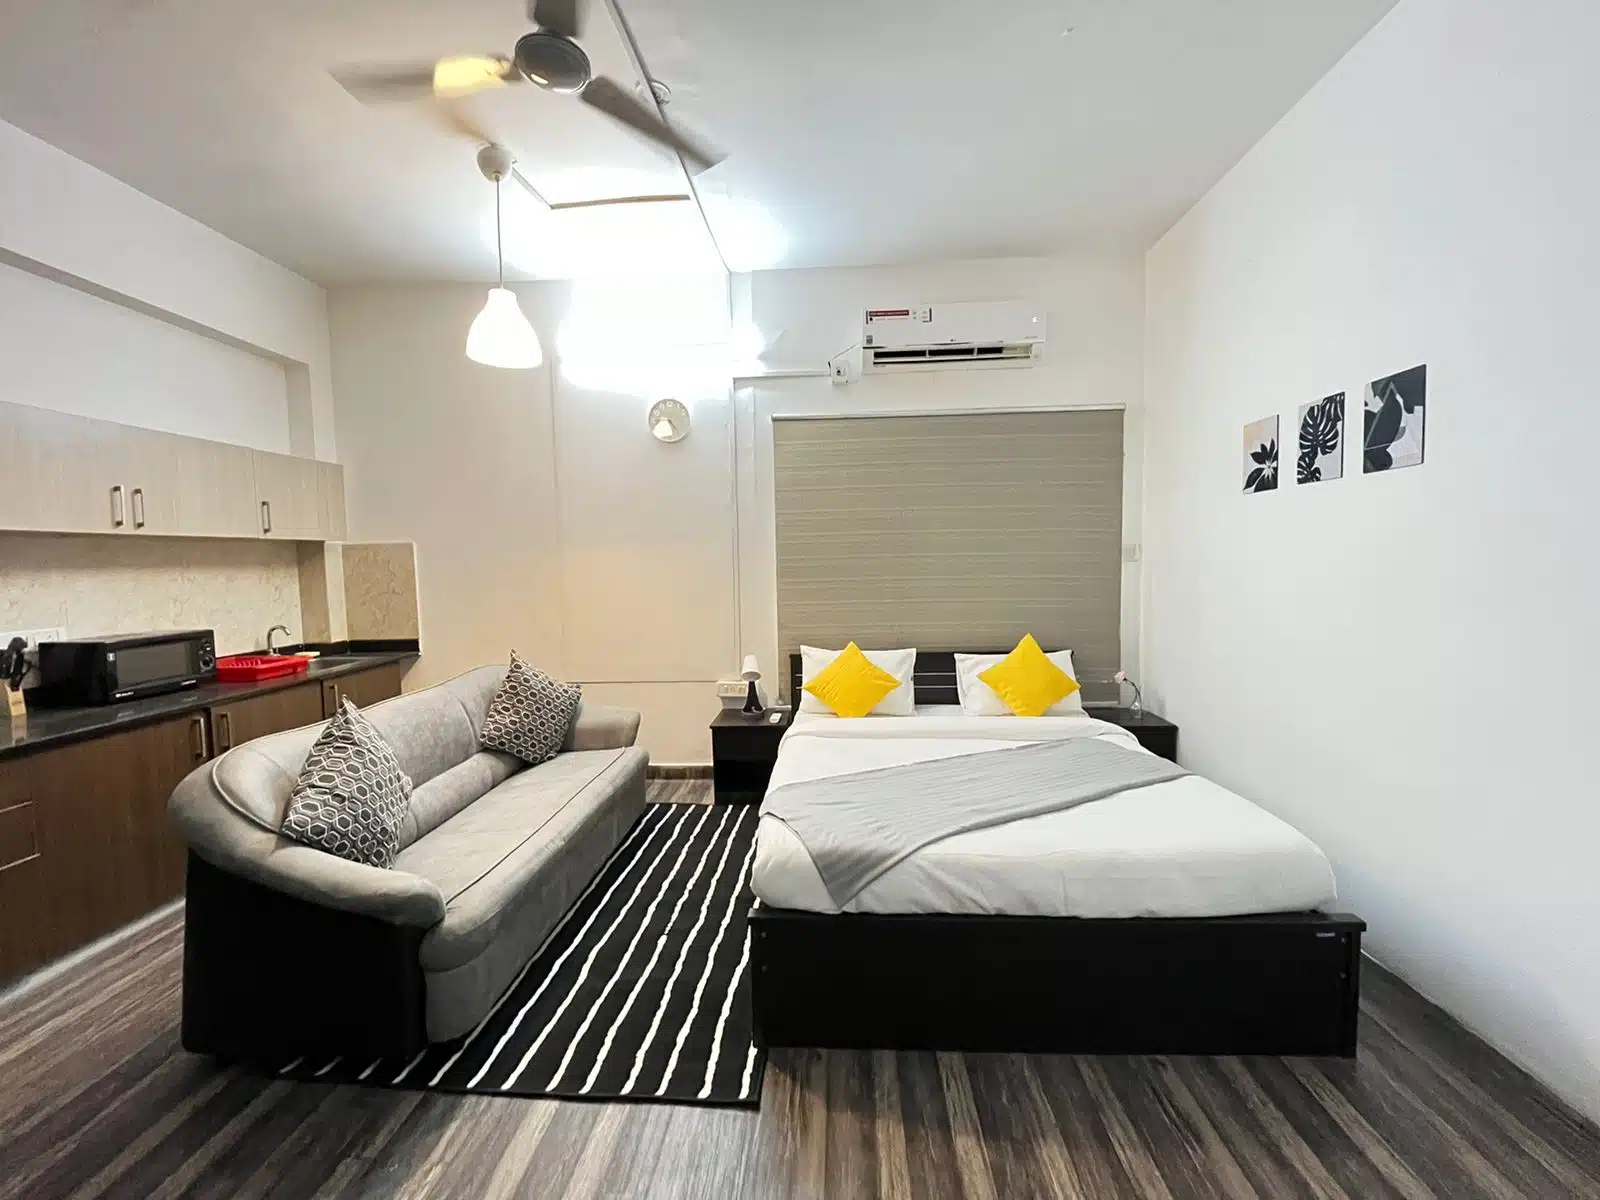 Bedroom, Studio Service apartment (Jubilee hills)